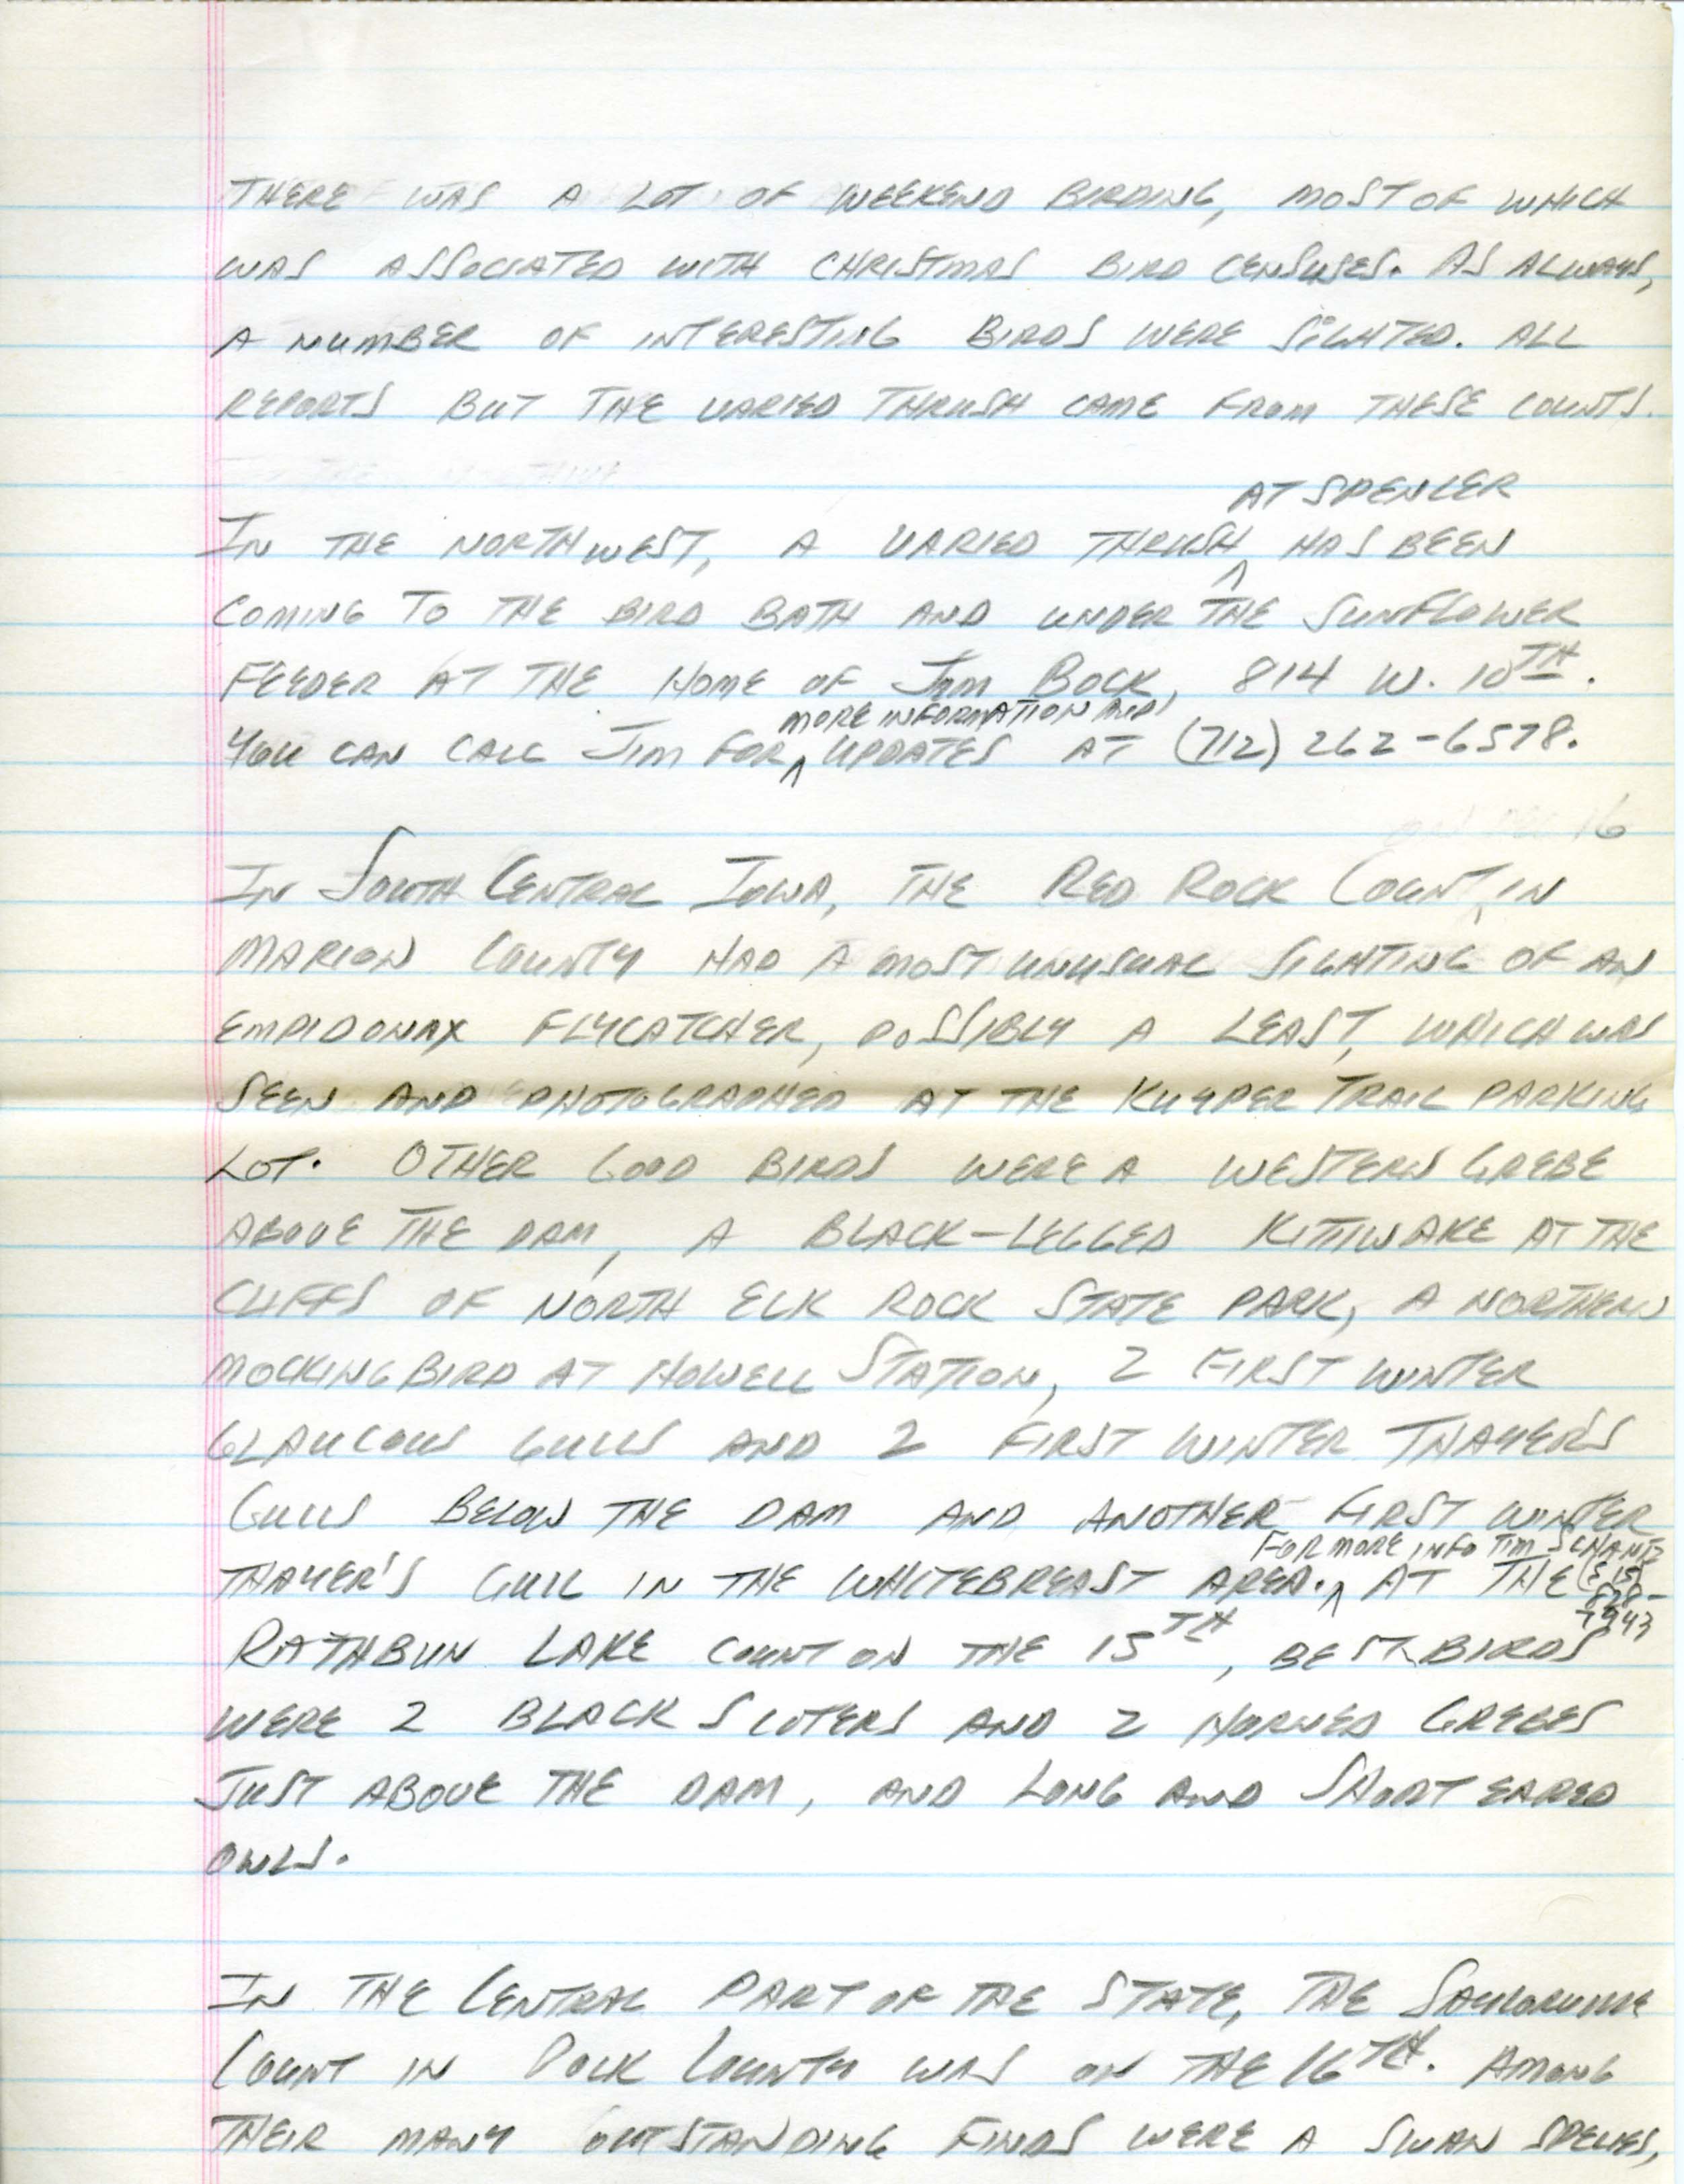 Iowa Birdline update, circa December 16, 1990, notes